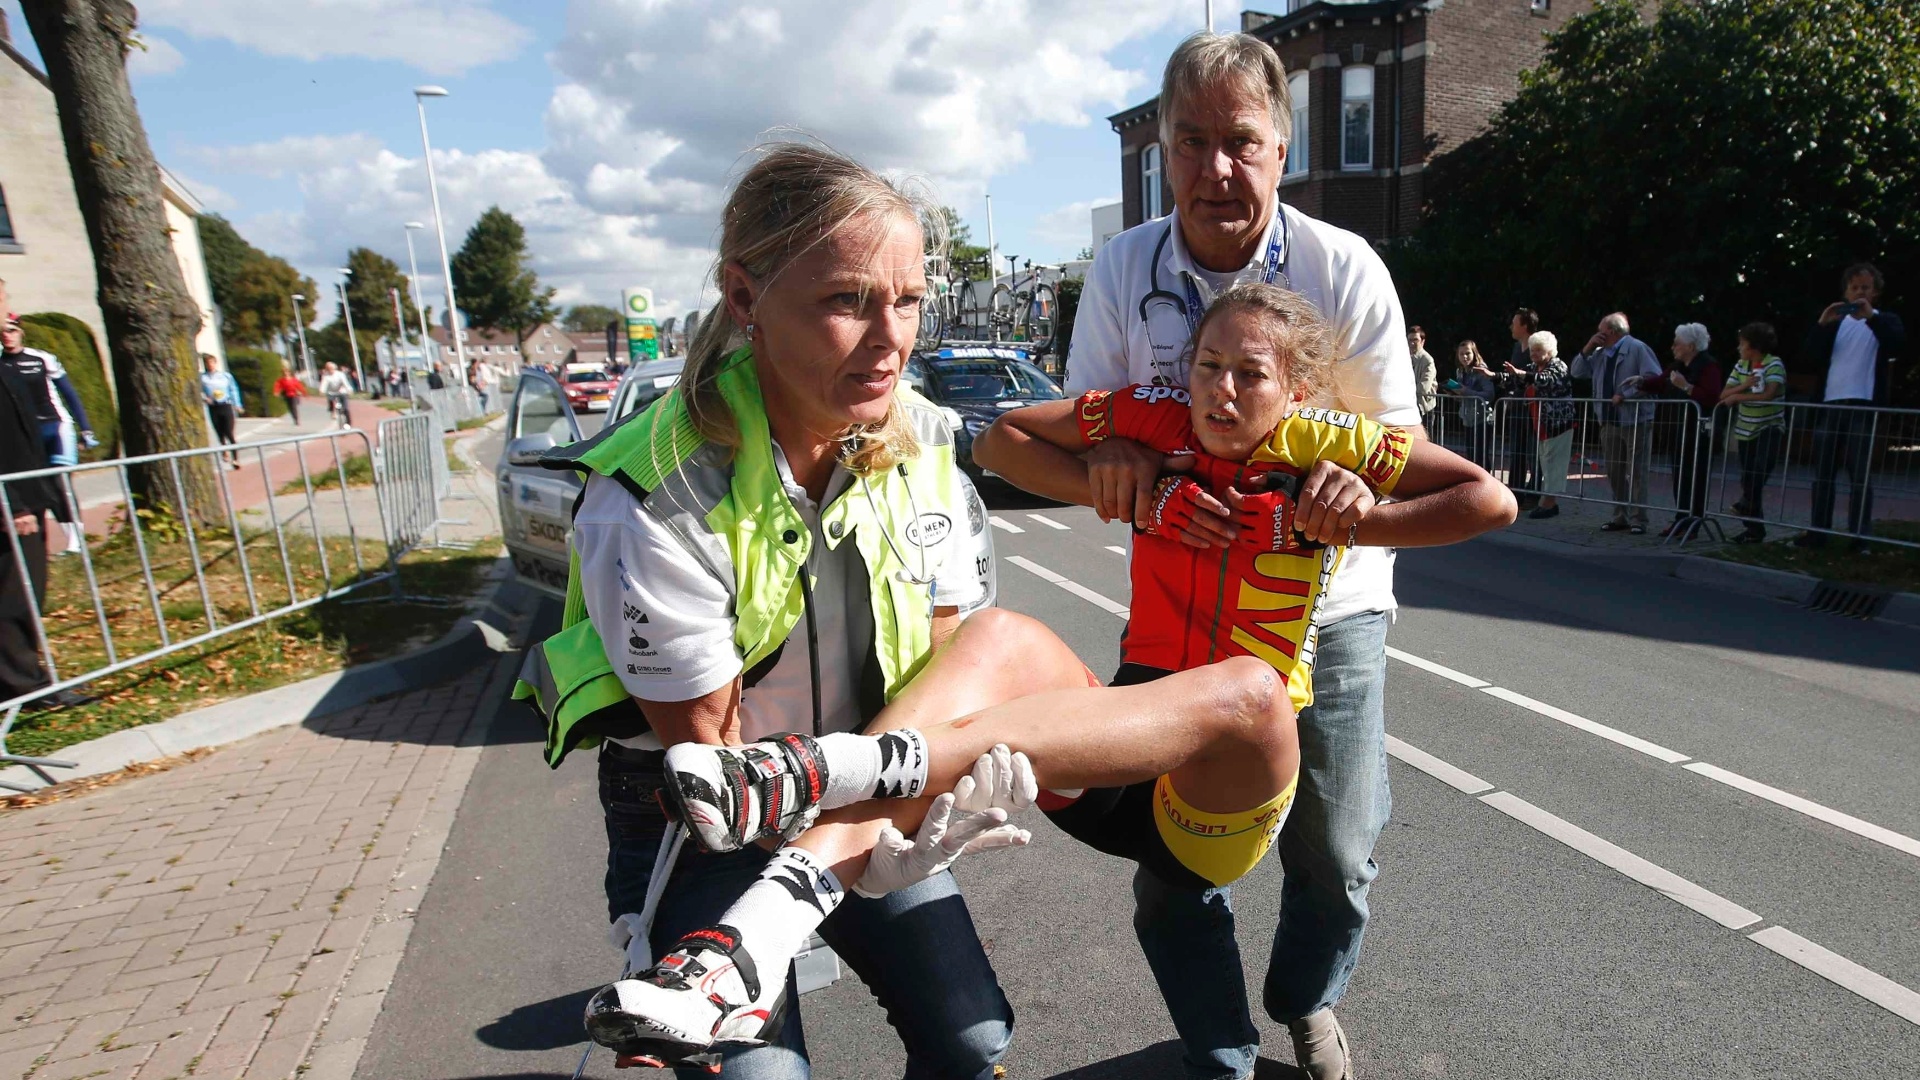 22.set.2012 - Agne Silinyte, da Lituânia, é carregada pelos médicos após se envolver em um acidente no Mundial de Ciclismo Estrada, na Holanda